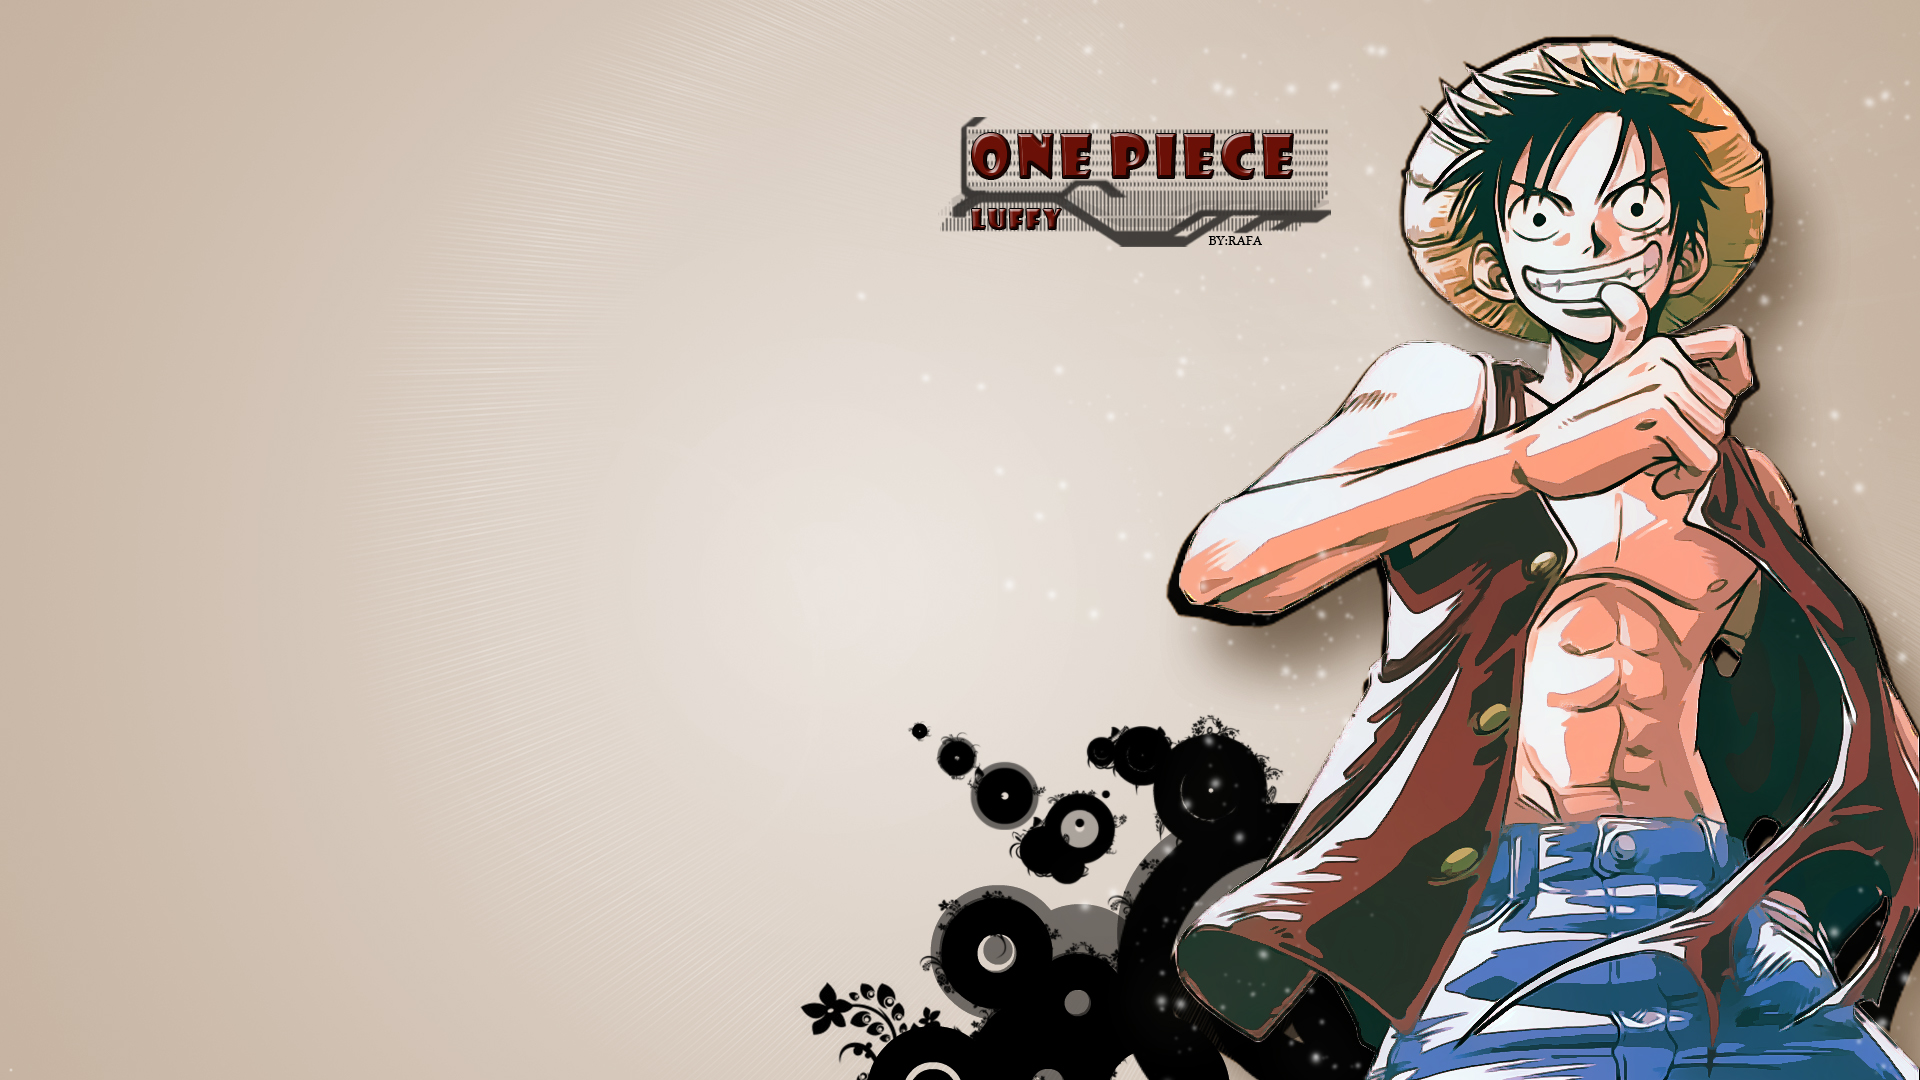 Bạn yêu thích Luffy One Piece? Hãy tải ngay hình nền này về máy tính và tận hưởng không khí tuyệt vời nhất với nhân vật huyền thoại của One Piece. Bạn sẽ không thể bỏ qua hình ảnh đẹp như mơ này được.